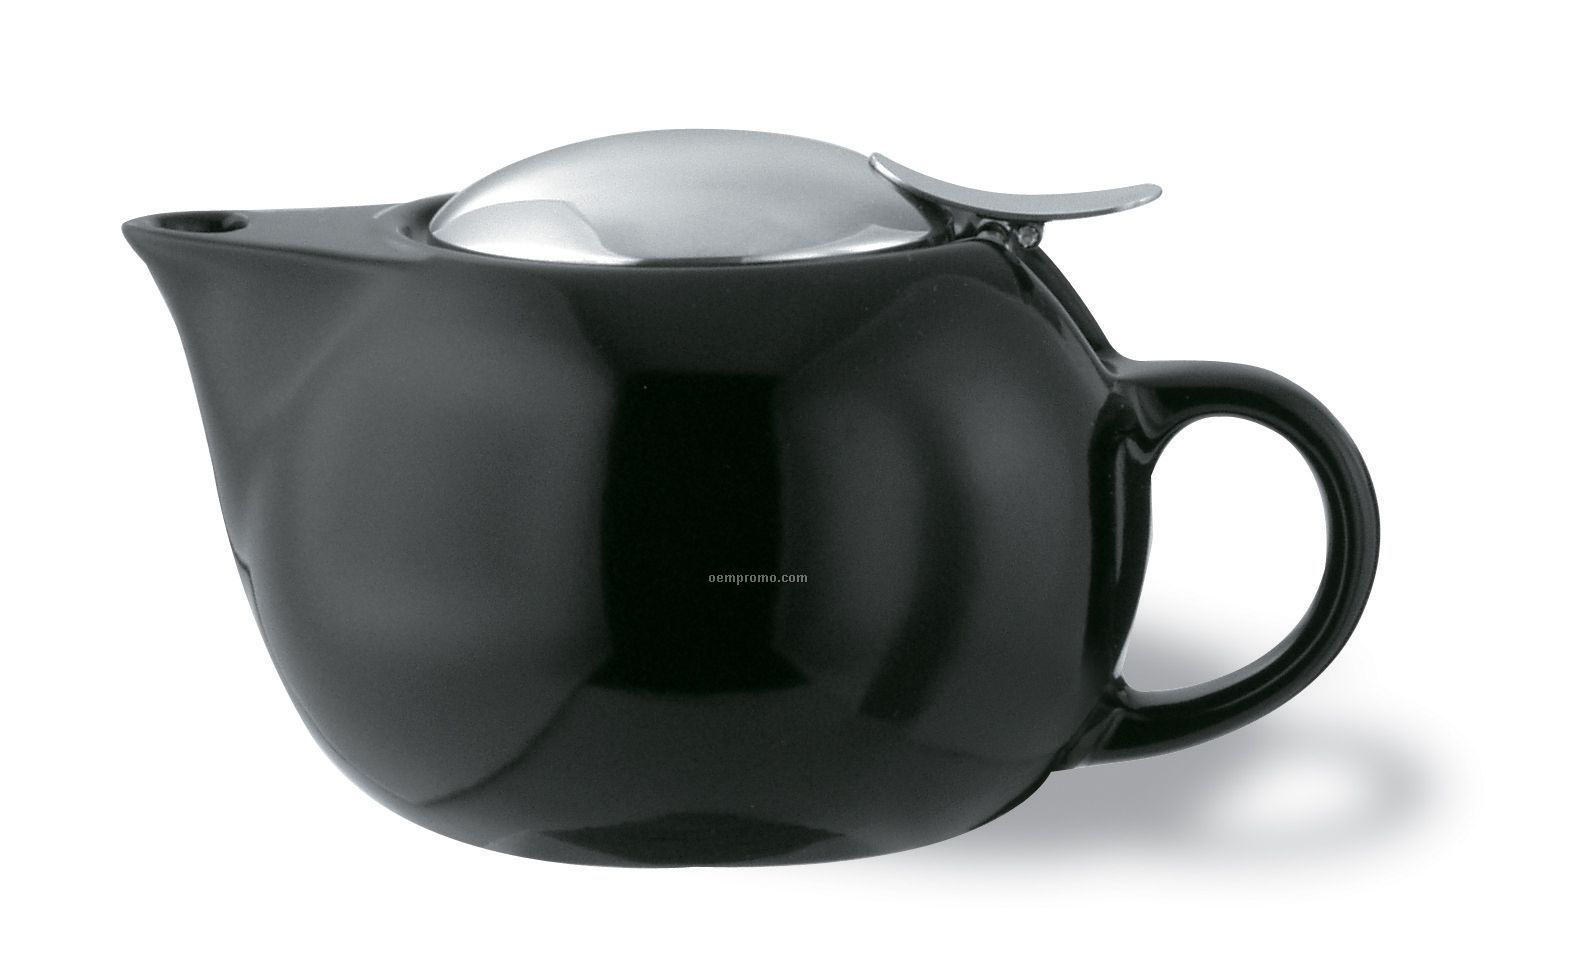 10 Oz. Ceramic Tea Pot With Infuser Basket